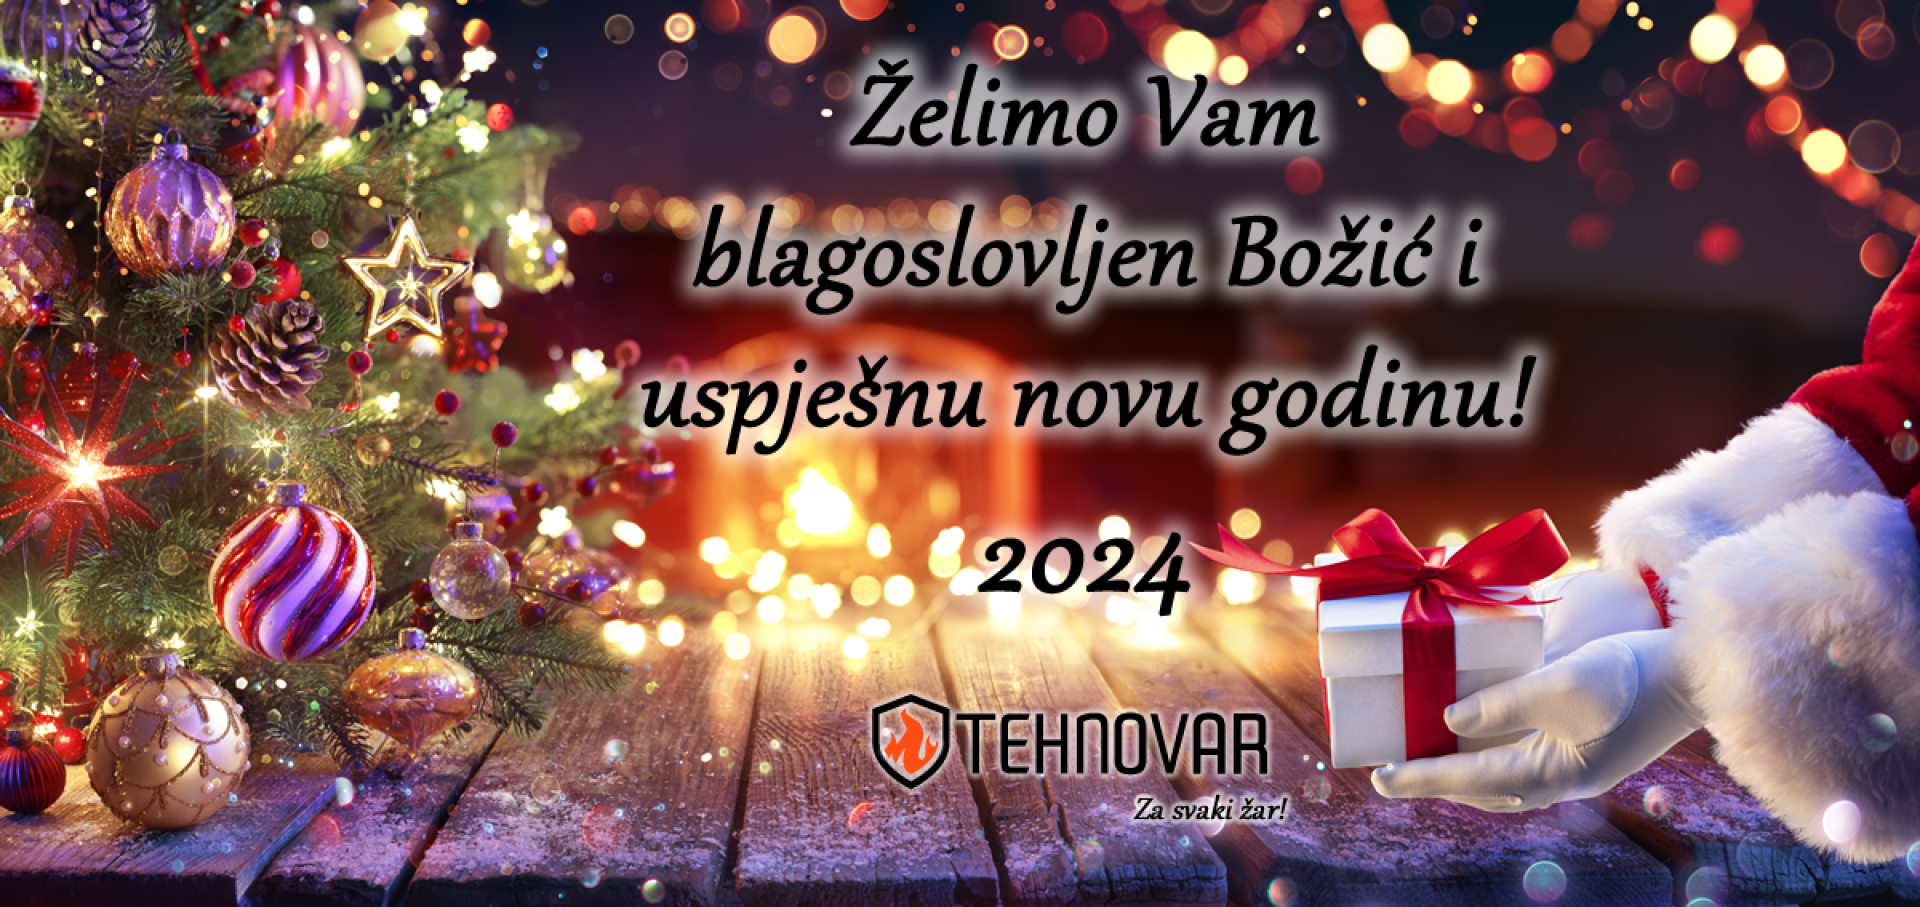 Želimo Vam blagoslovljen Božić i uspješnu novu godinu!